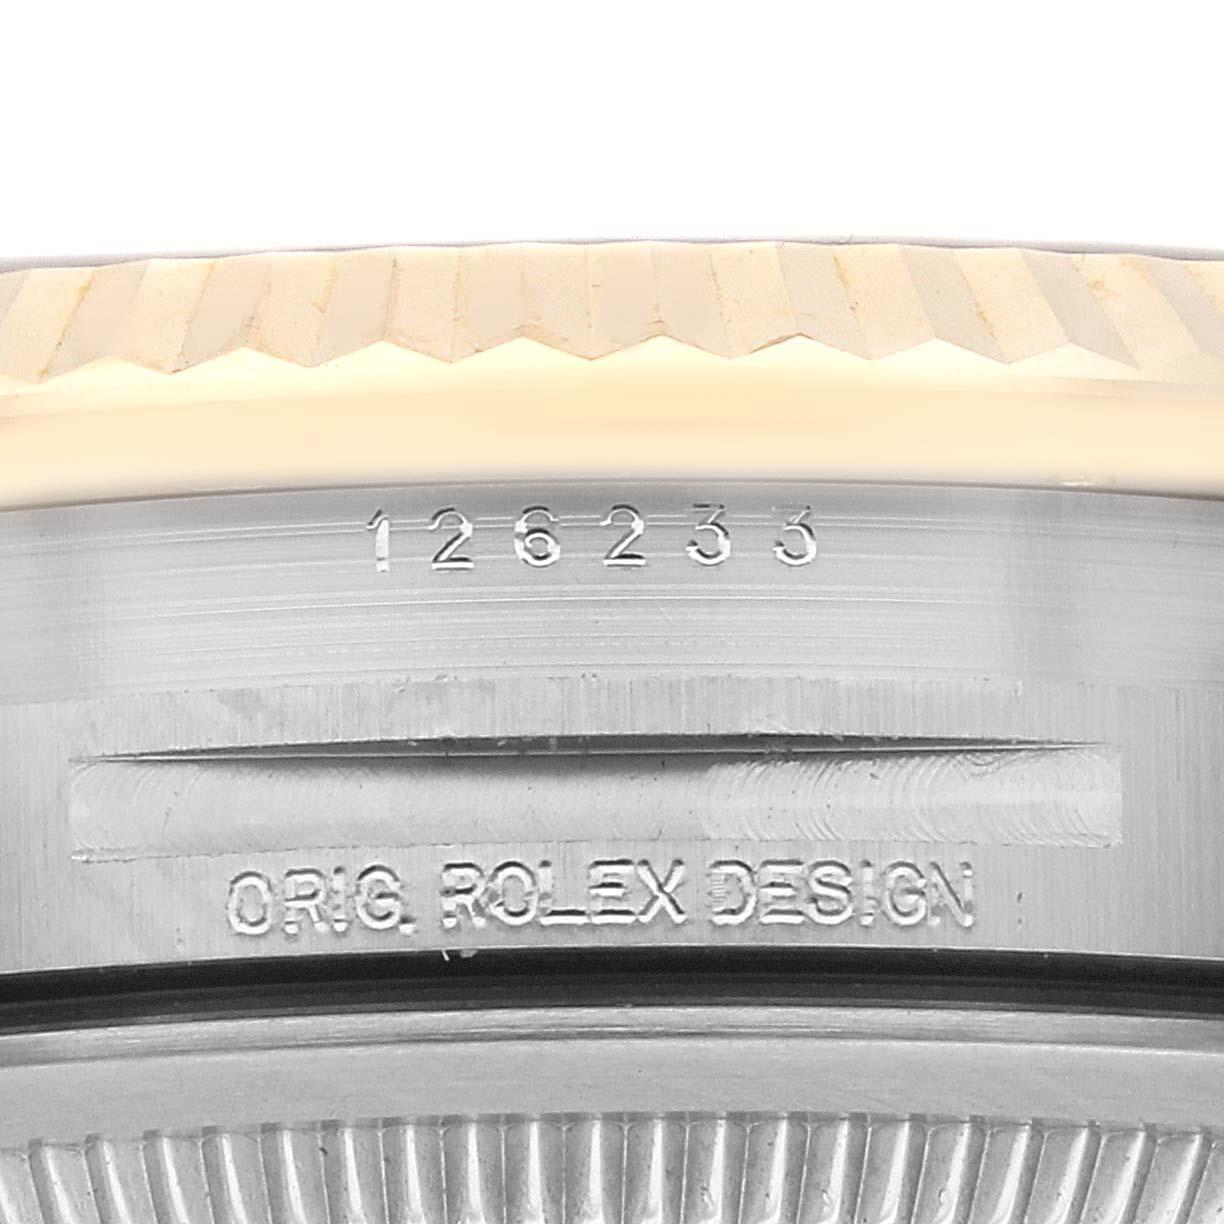 Rolex Datejust Stahl Gelbgold Champagner Diamant-Zifferblatt Herrenuhr 126233 Ungetragen. Offiziell zertifiziertes Chronometerwerk mit automatischem Aufzug. Gehäuse aus Edelstahl und 18 Karat Gelbgold mit einem Durchmesser von 36,0 mm. Rolex Logo